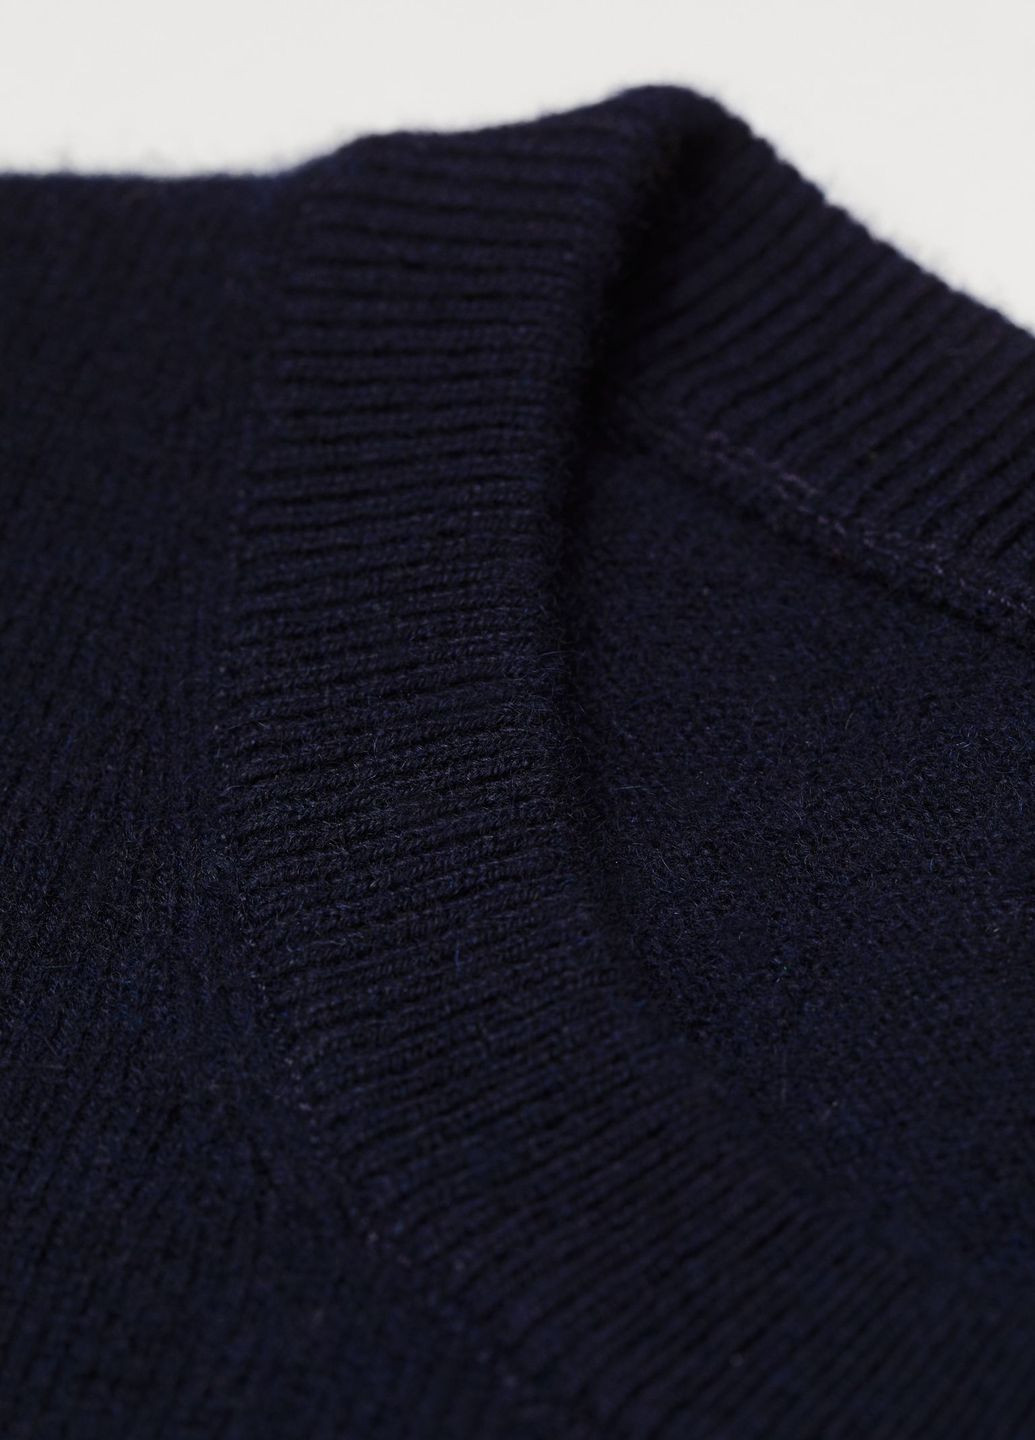 Темно-синий демисезонный кашемировый свитер premium selection темно-синий повседневный демисезон пуловер H&M